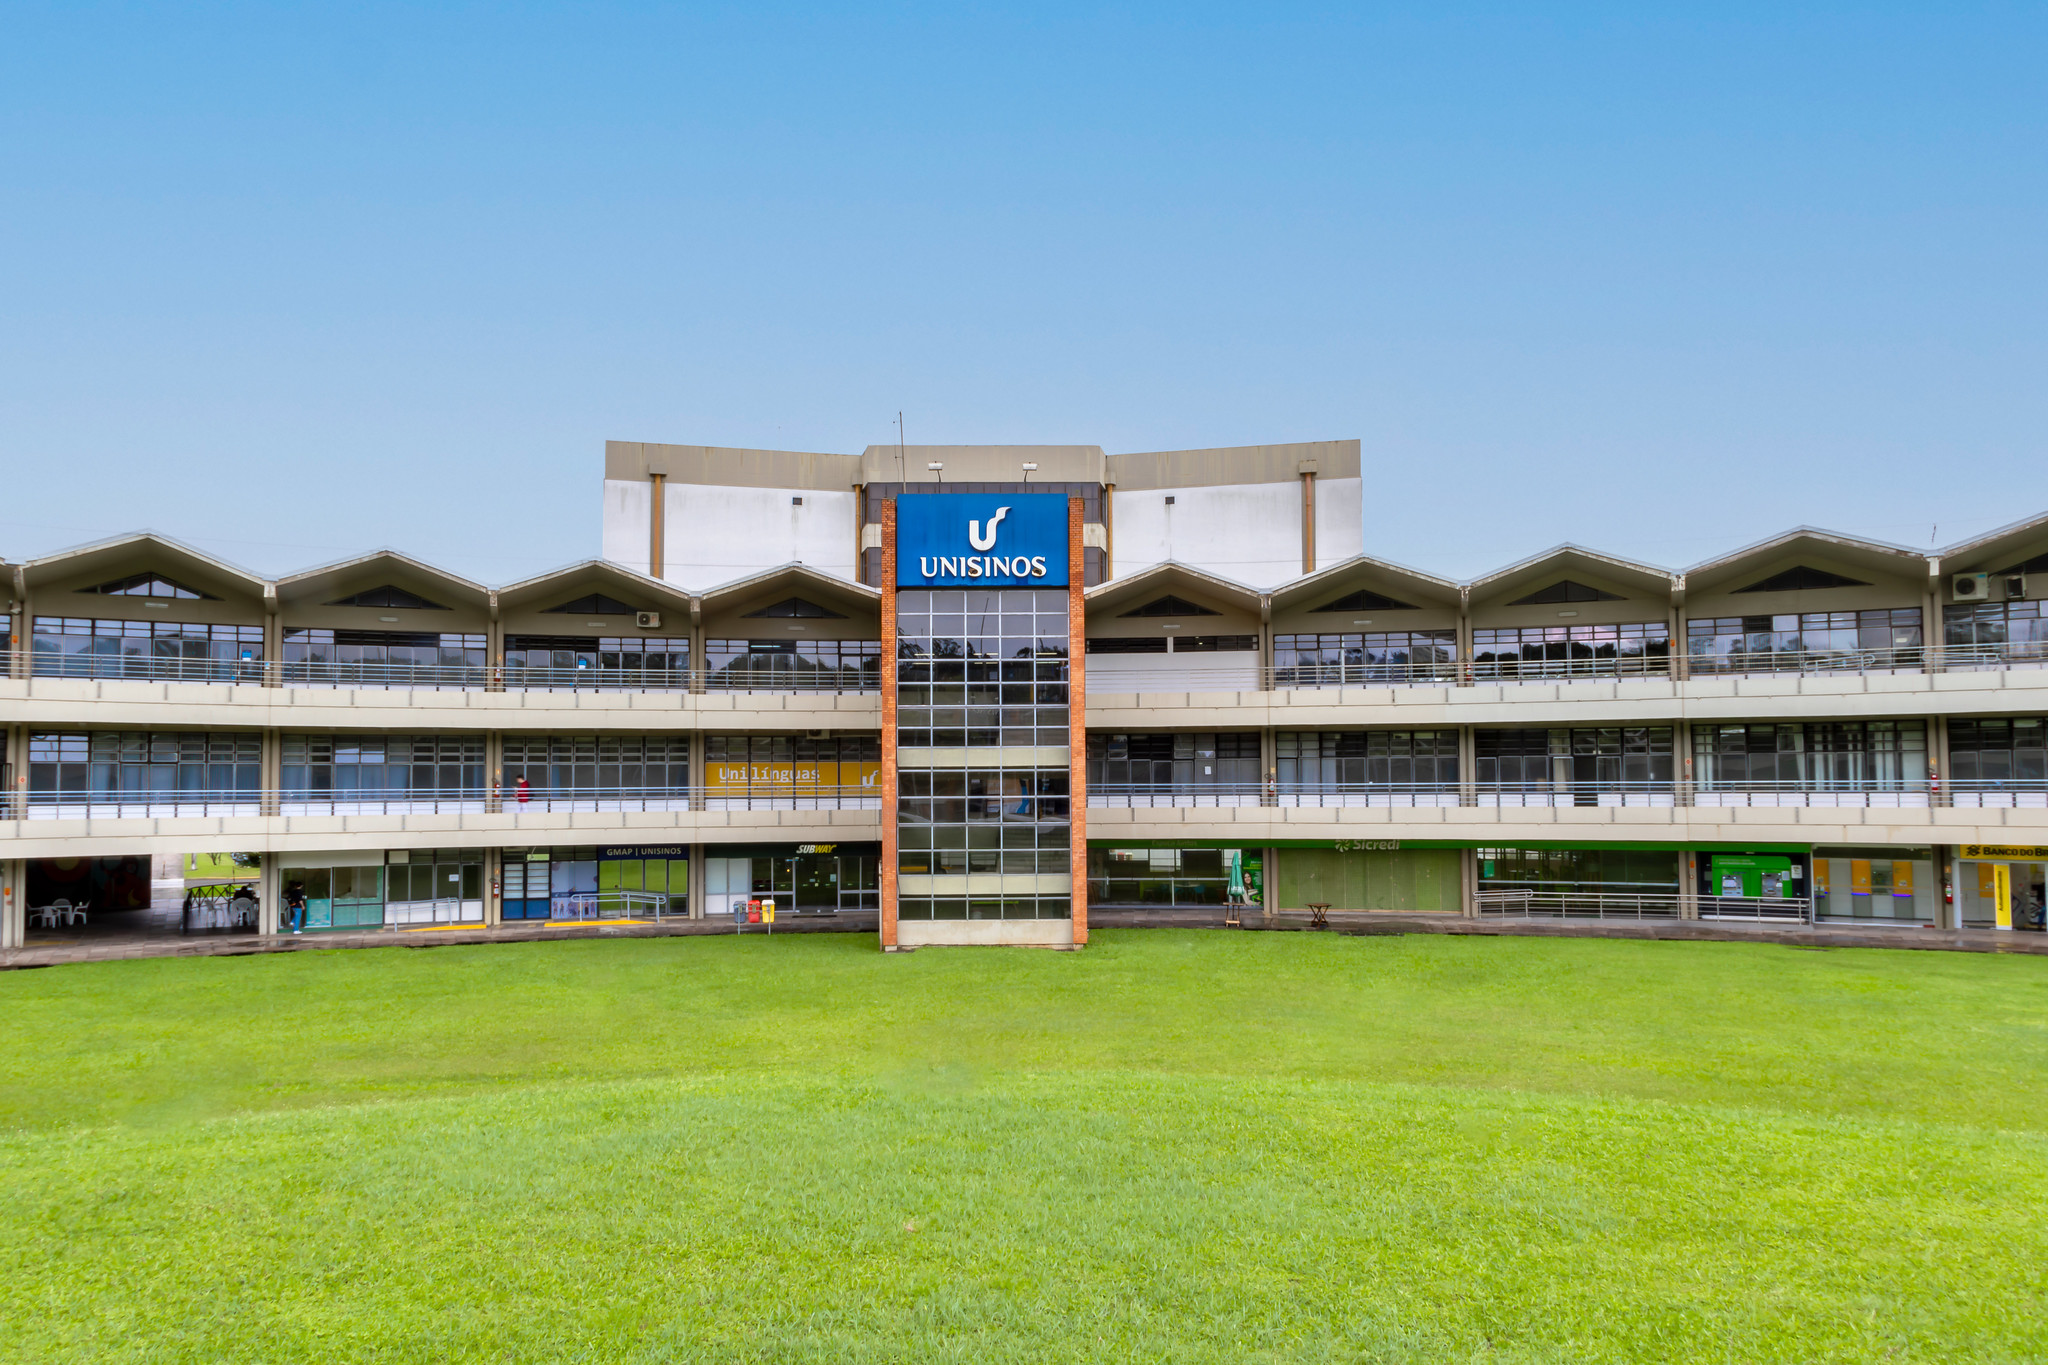 Imagem do prédio administrativo da Unisinos, com uma torre com o logo da universidade ao centro.